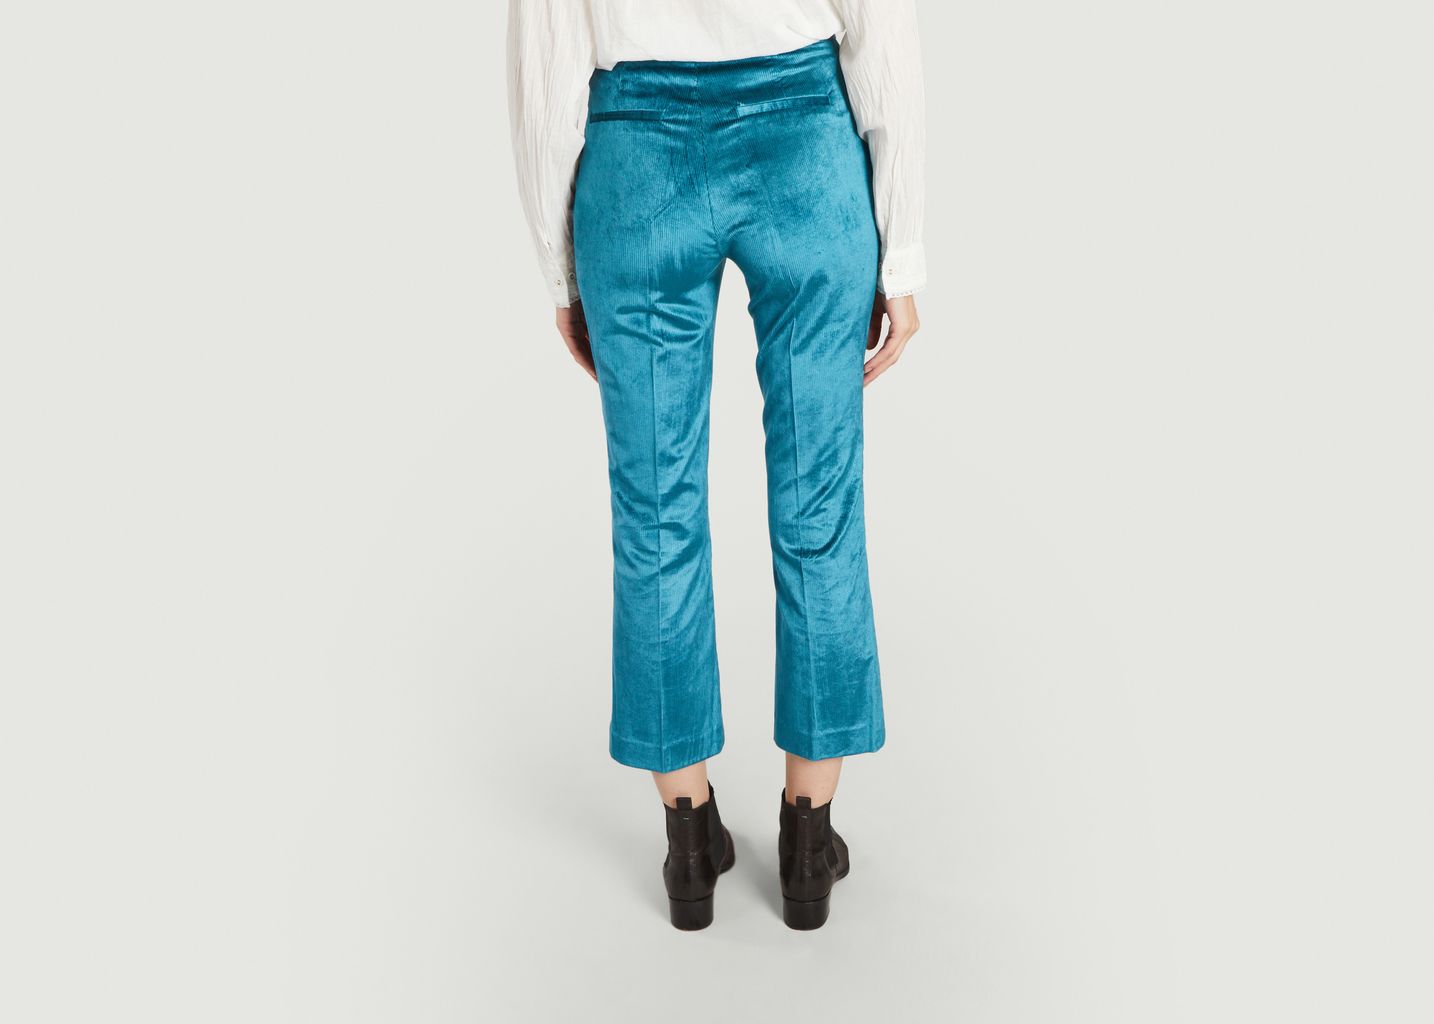 Papou velvet 7/8 length pants - Leon & Harper